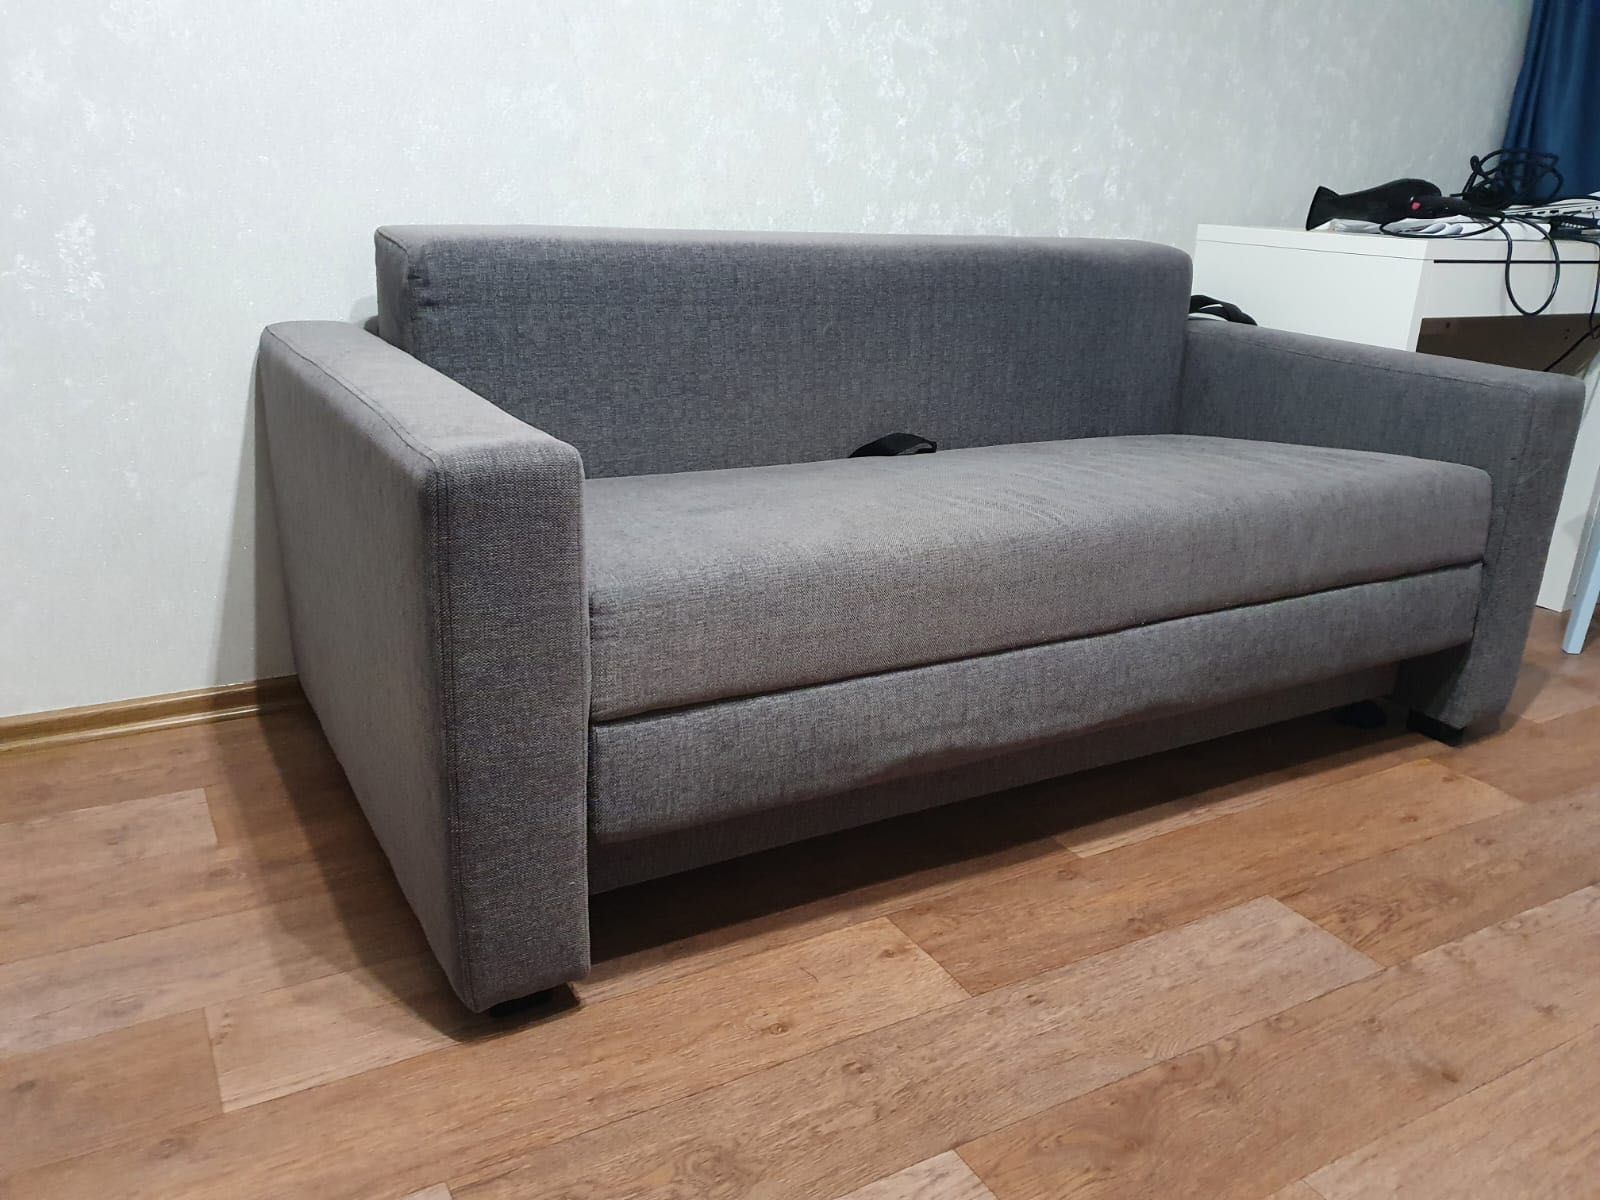 Удобный диван IKEA для гостиной/спальни.